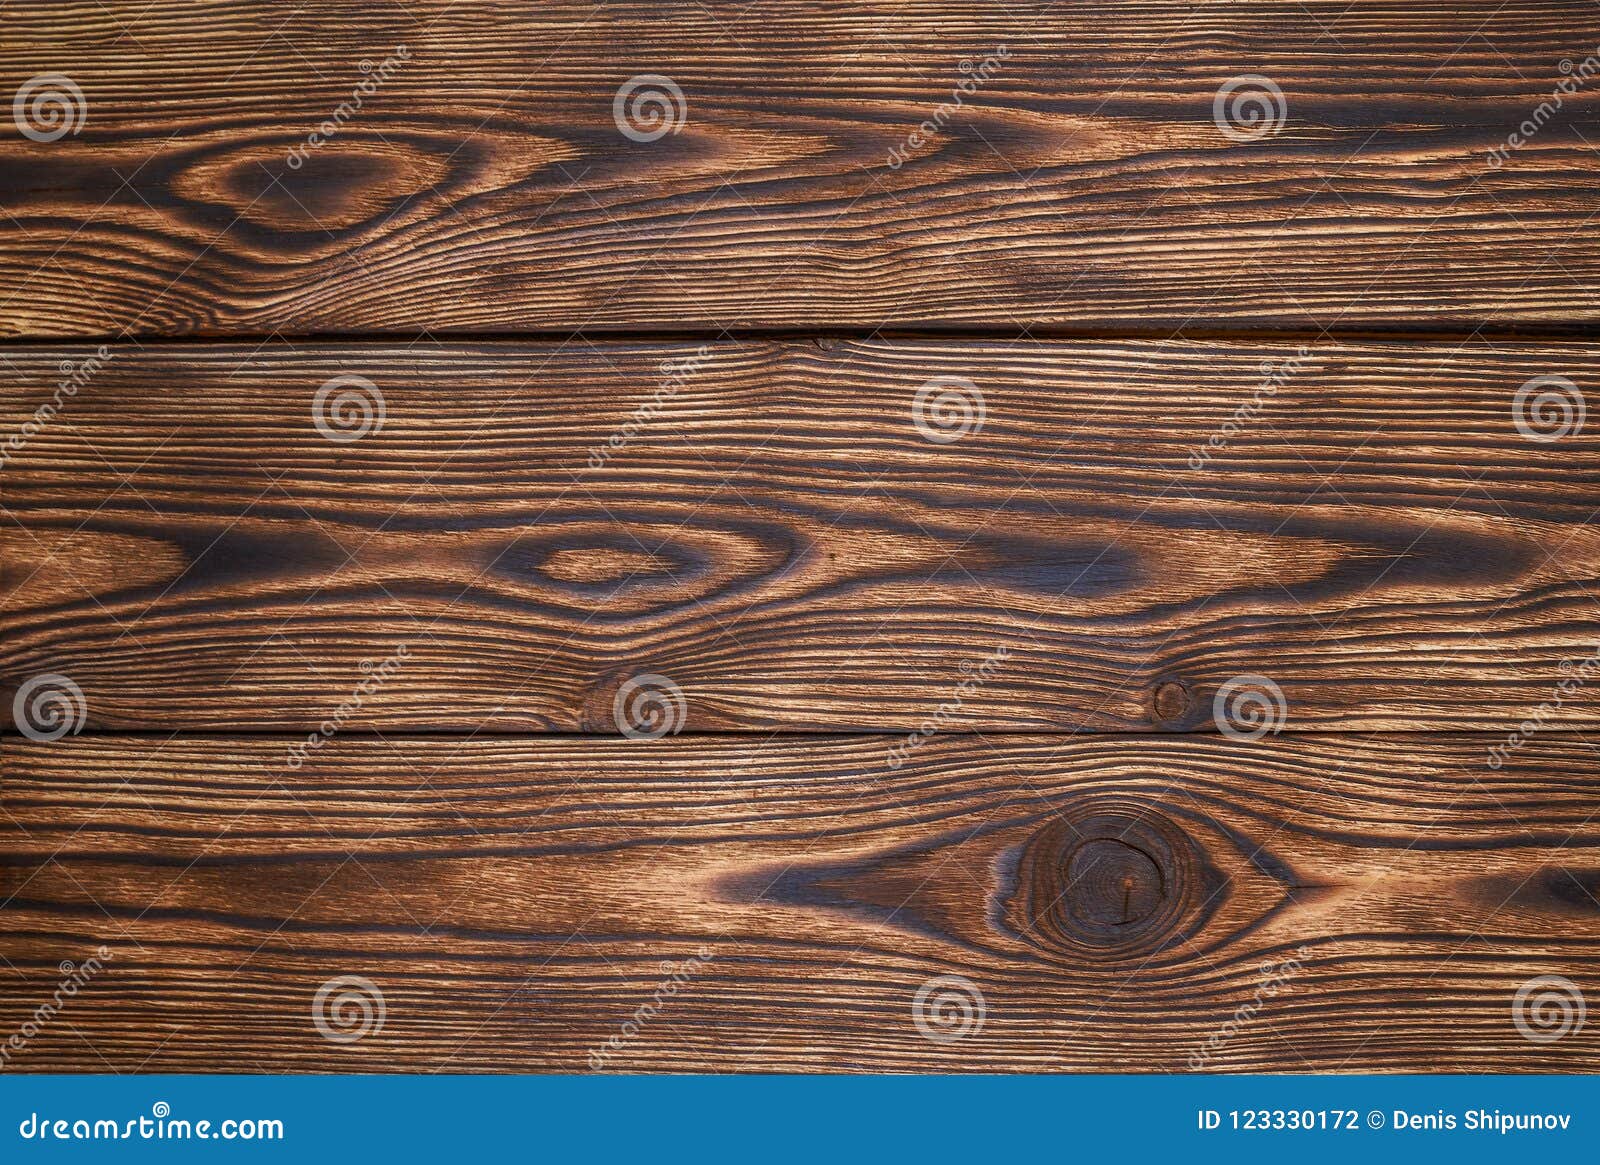 forum lanthaan Lao Houten Planken Bruine Mooie Patroon En Textuur Voor Achtergrond Stock Foto  - Image of achtergrond, nave: 123330172